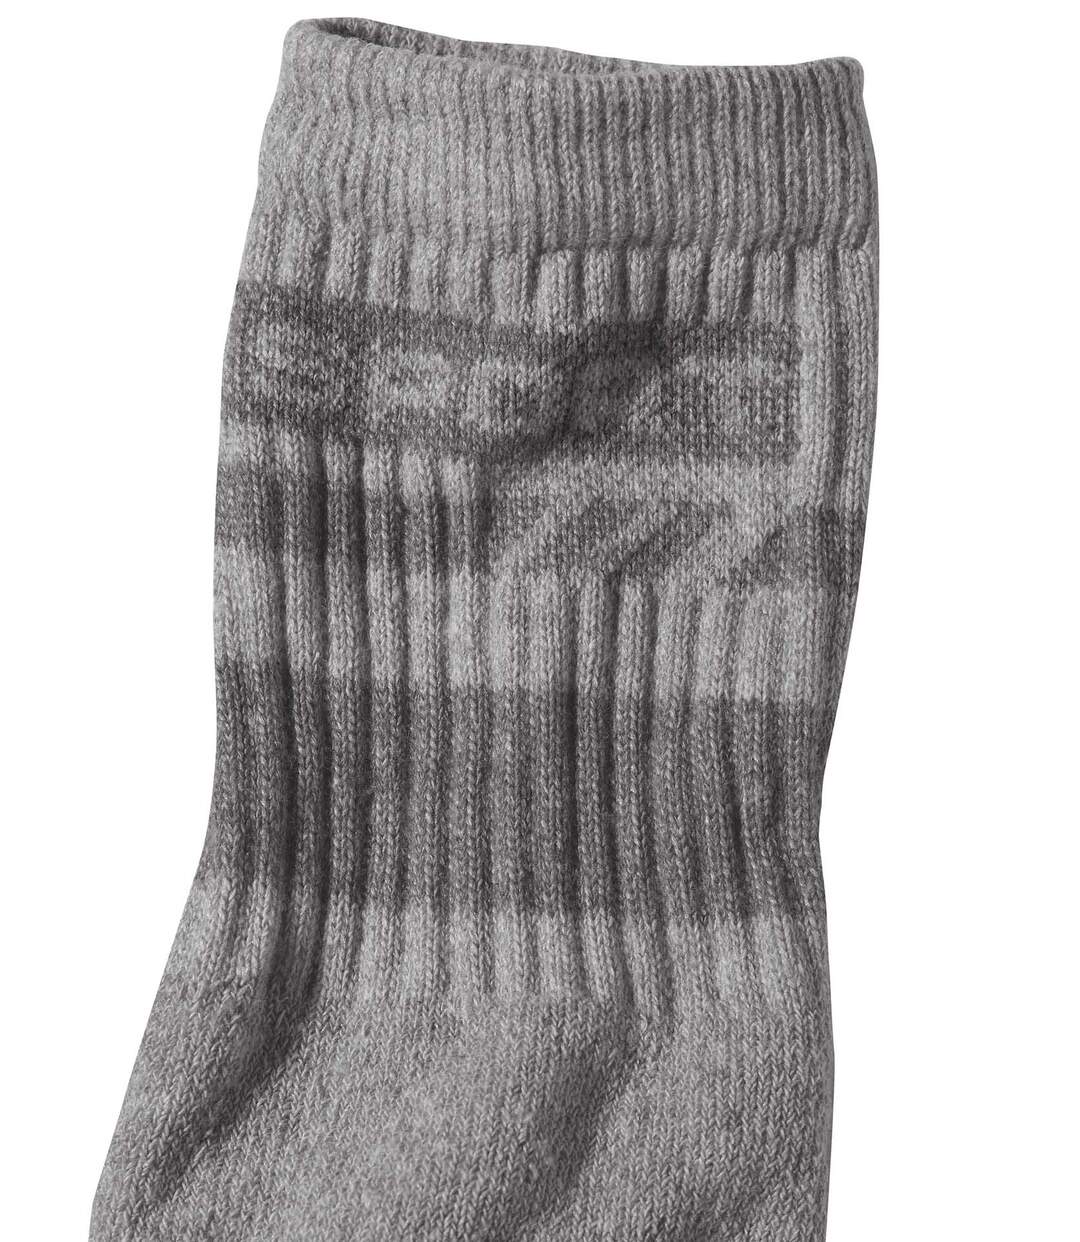 Pack of 4 Pairs of Men's Sports Socks - Burgundy Gray Indigo Atlas For Men